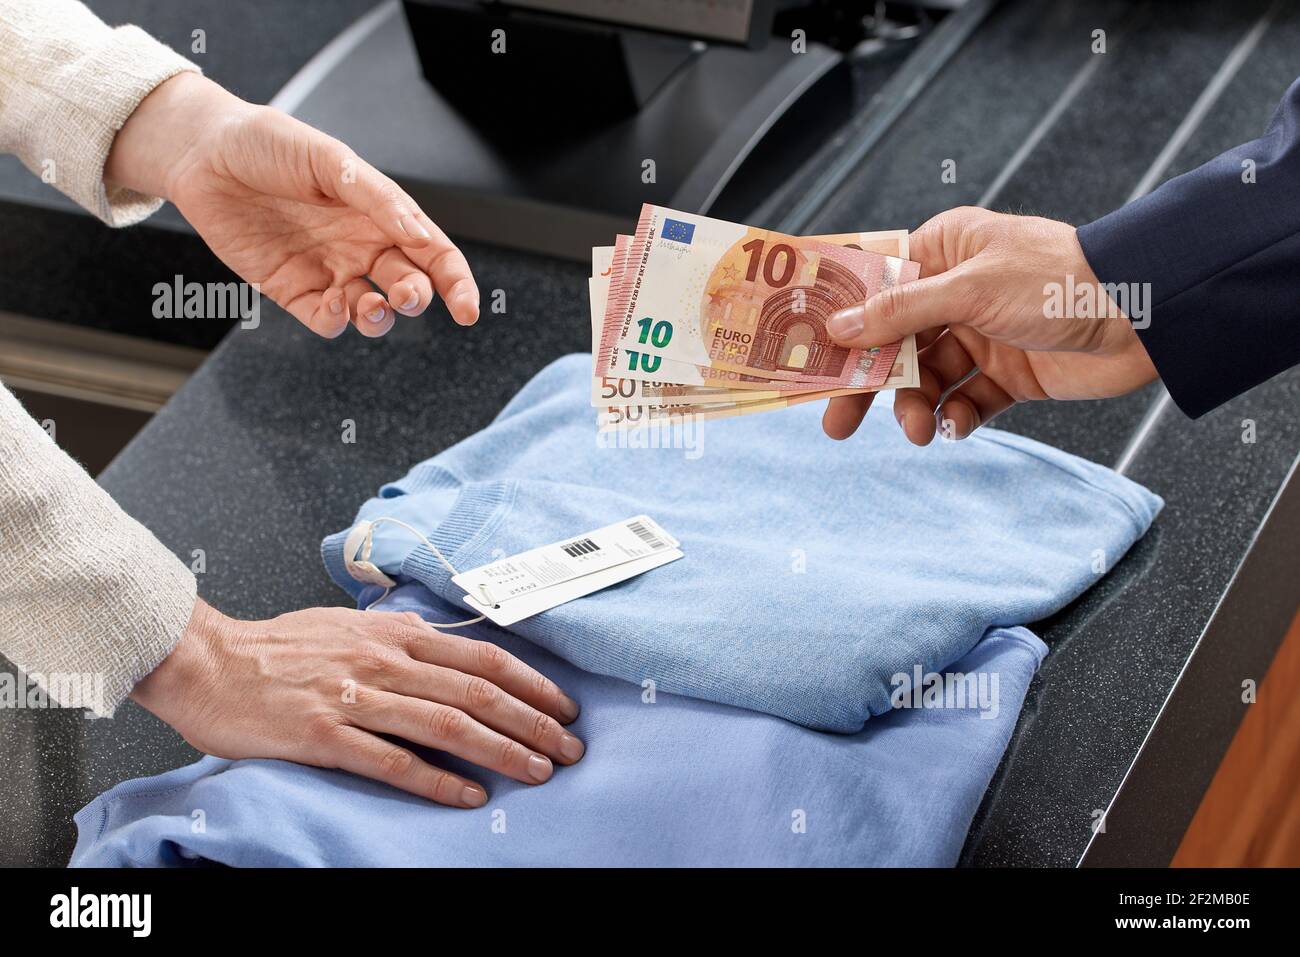 Un client mâle remet des billets € au guichet d'un magasin de mode, une femme vendeuse dans un magasin de textile, seulement les mains visibles Banque D'Images